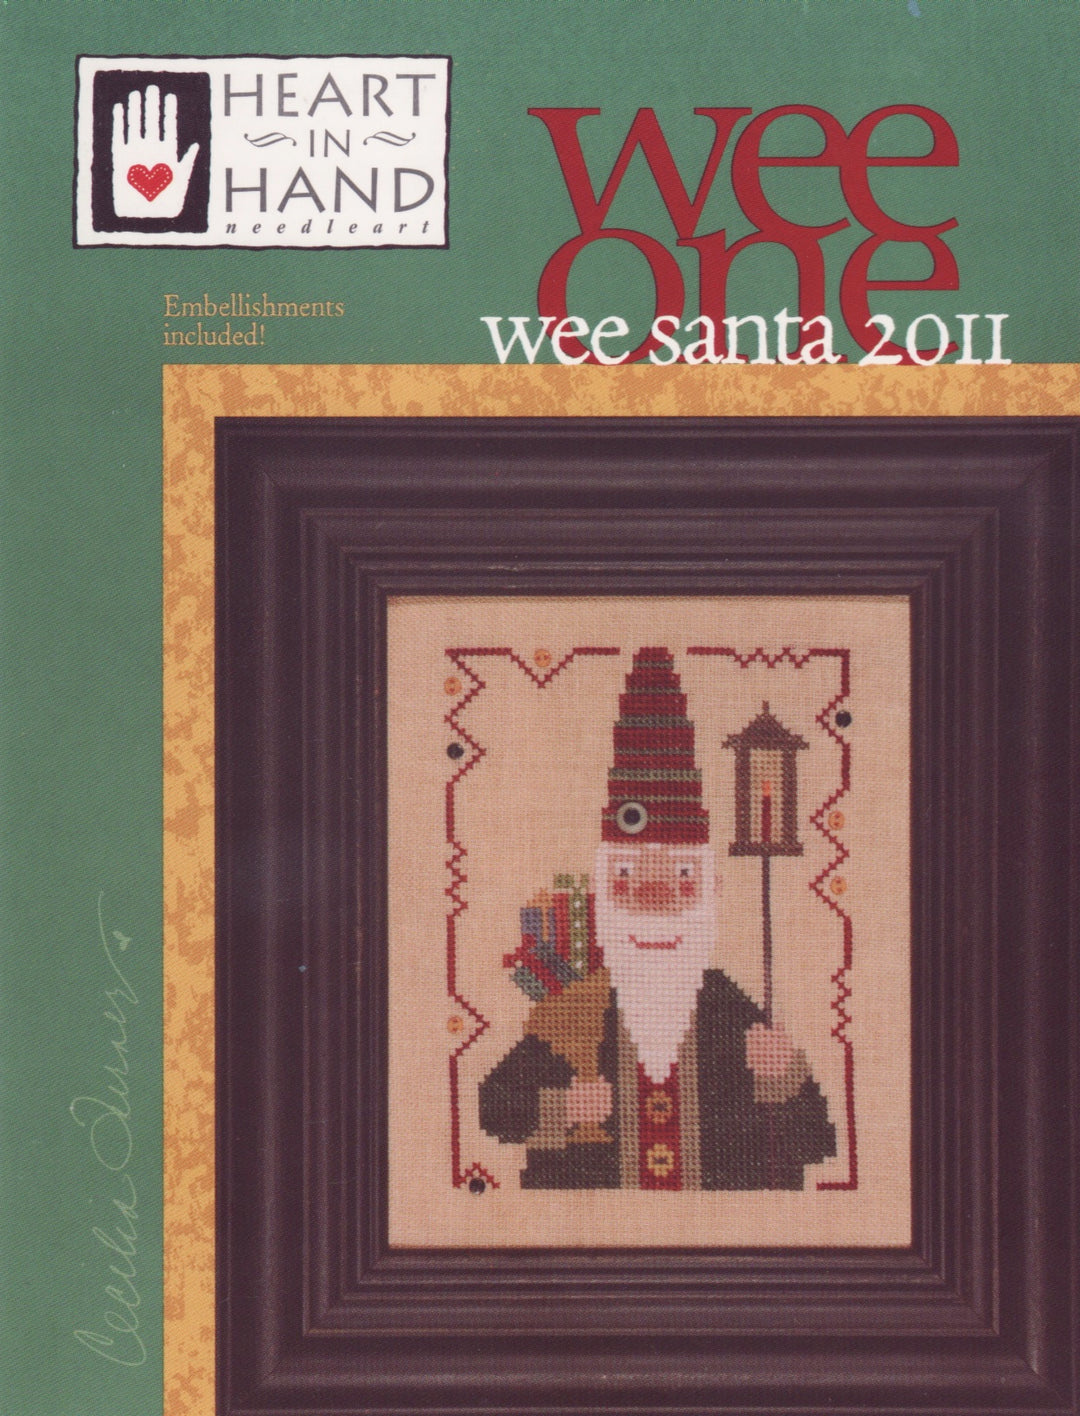 Wee One: Wee Santa 2011